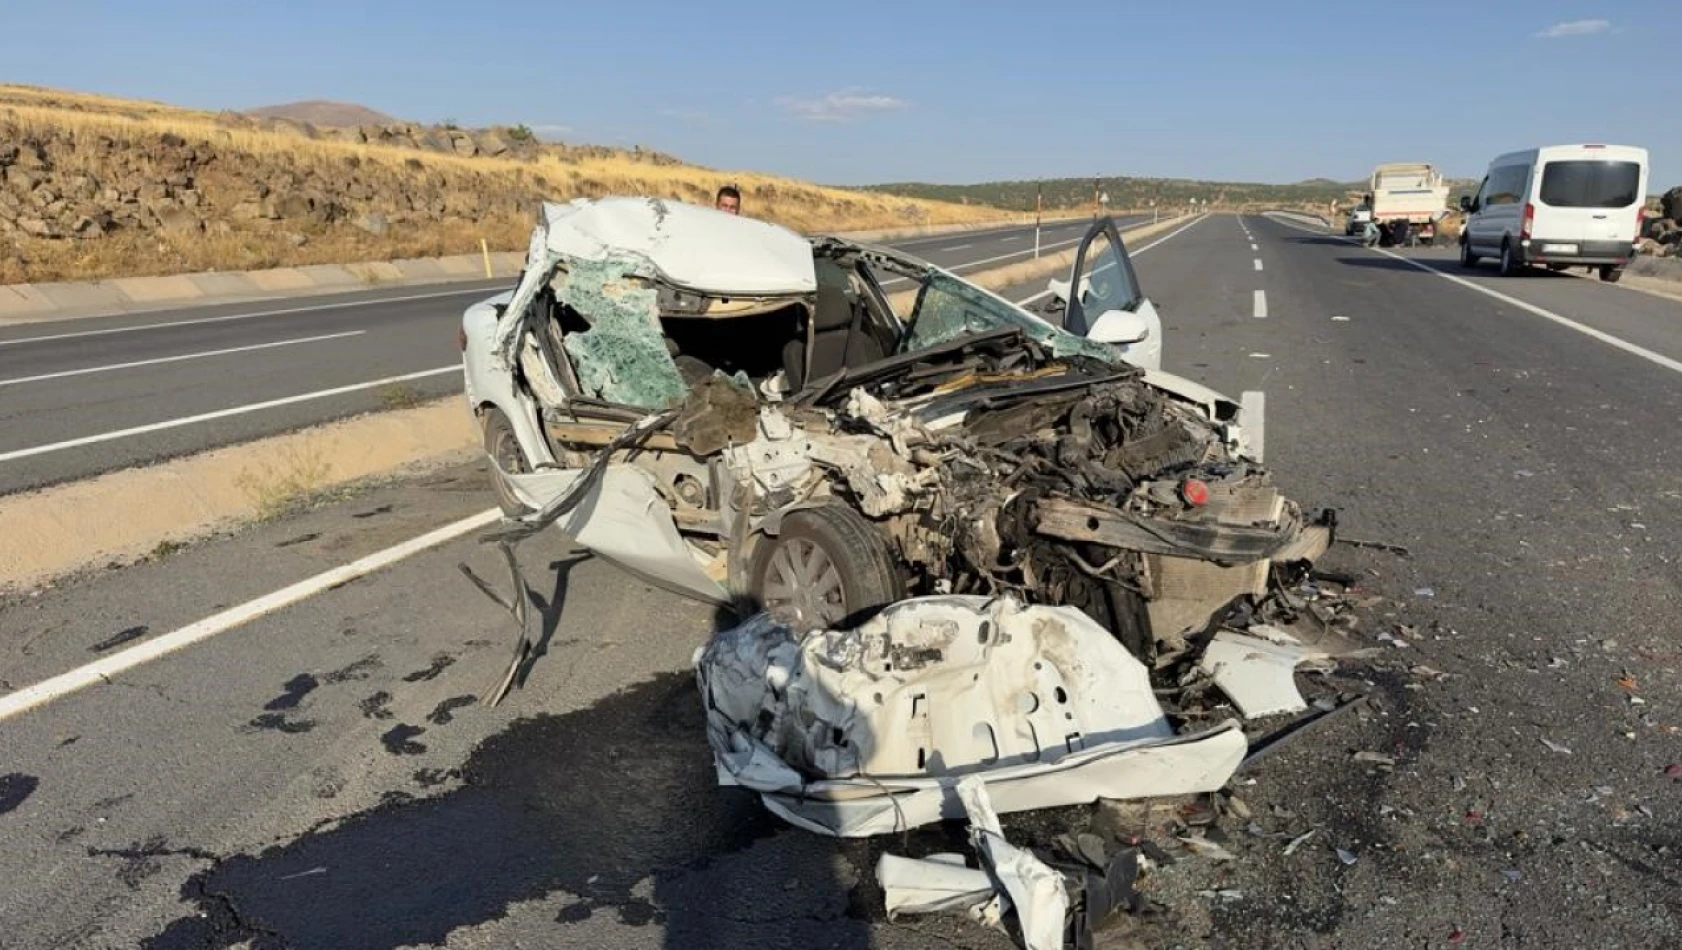 Elazığ'da kamyonla çarpışan otomobil hurdaya döndü: 1 ölü, 1 yaralı